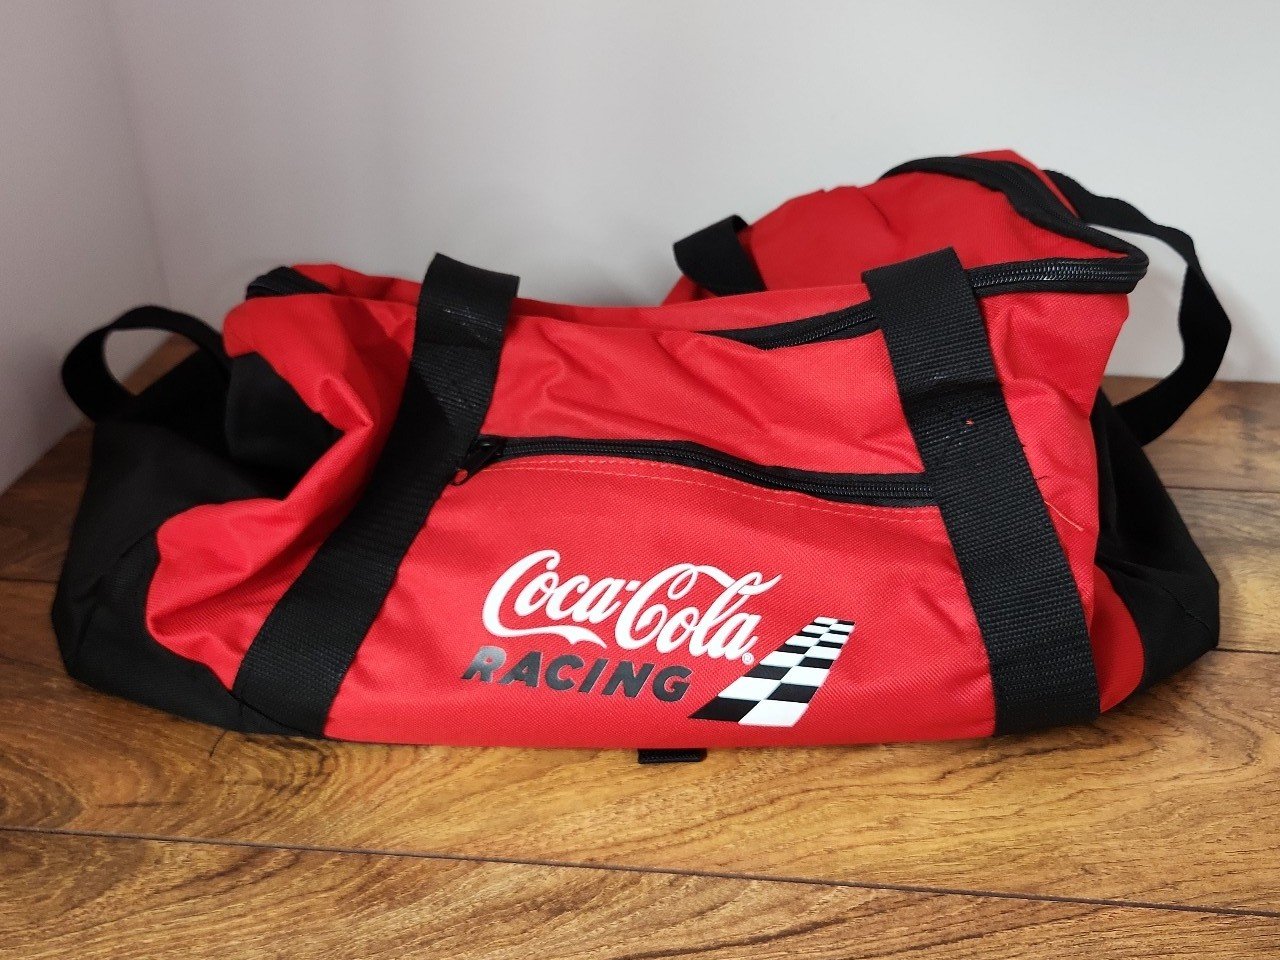 Coca Cola racing duffle bag c63sdLzAB